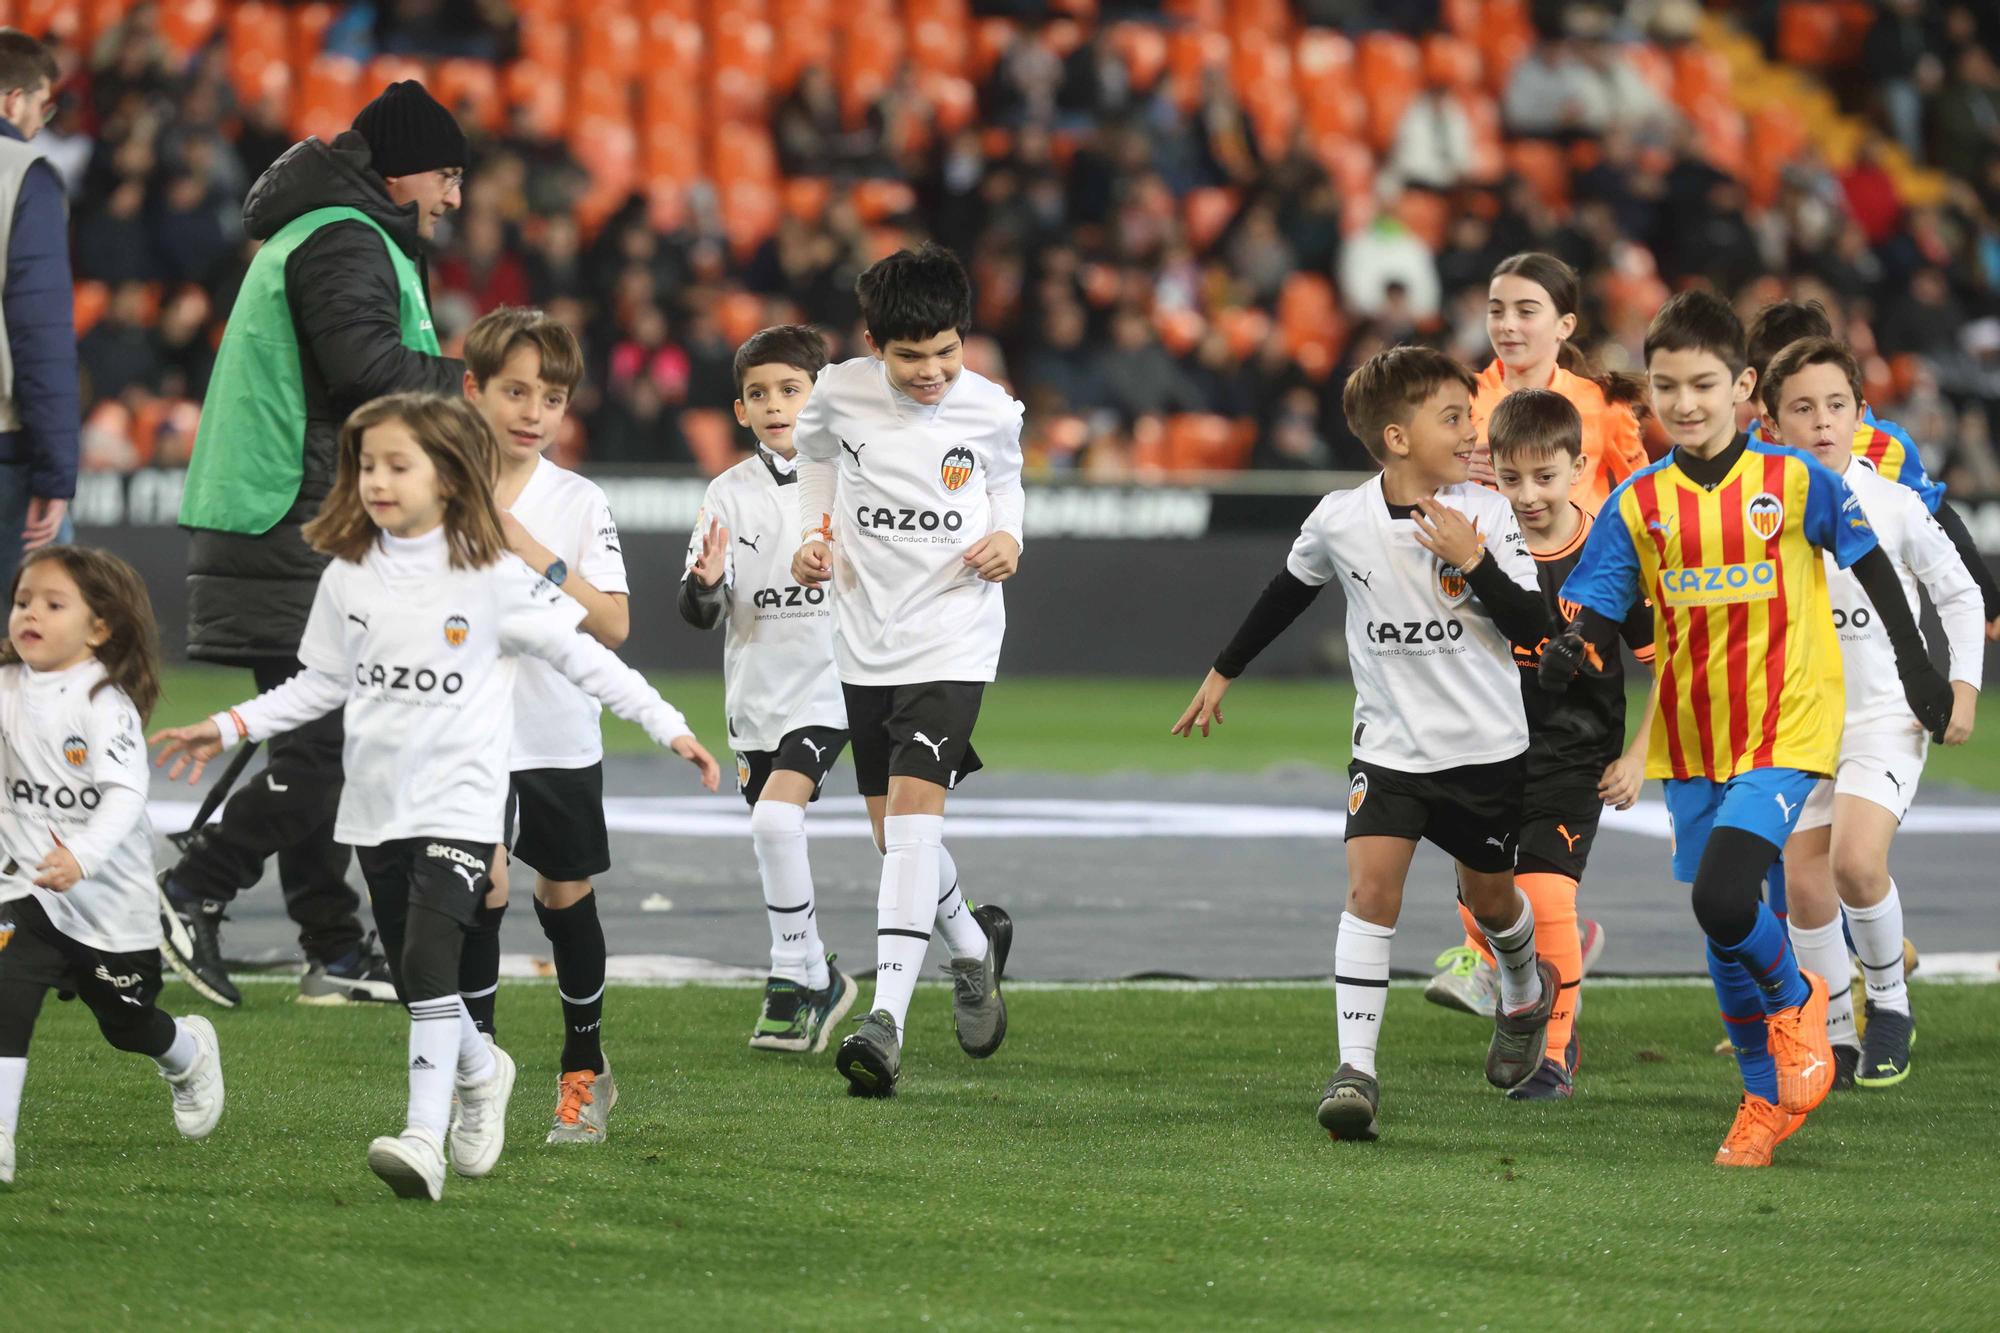 Valencia CF - UD Almería